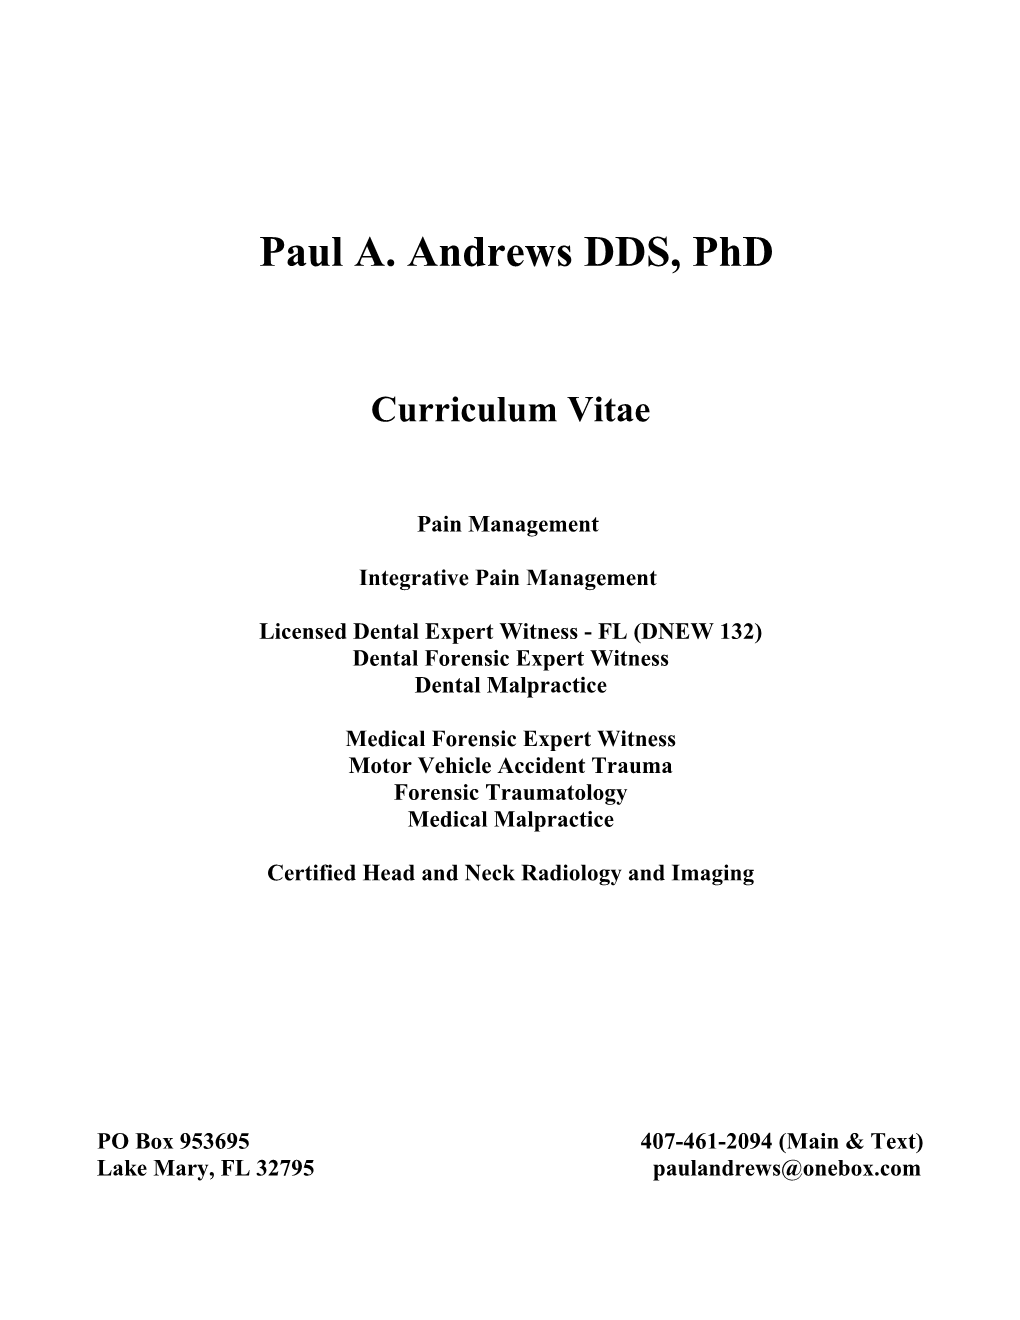 Paul A. Andrews DDS, Phd